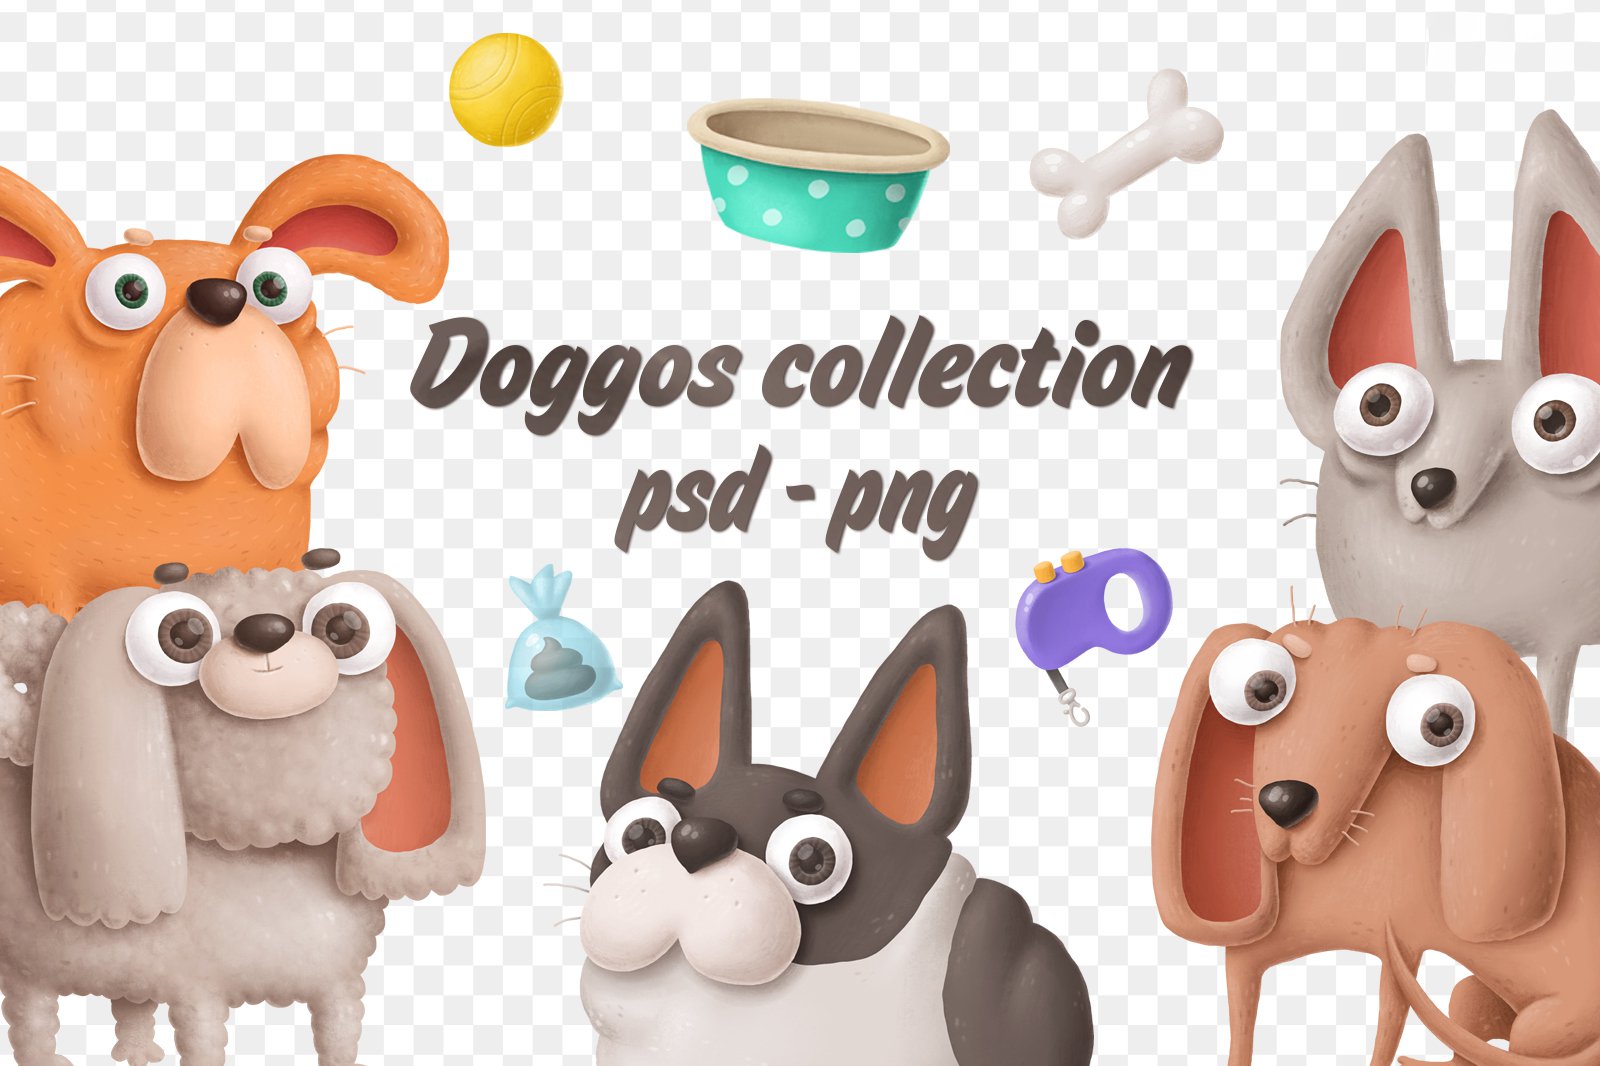 Растровый клипарт Doggos collection png с прозрачным фоном psd скачать бесплатно